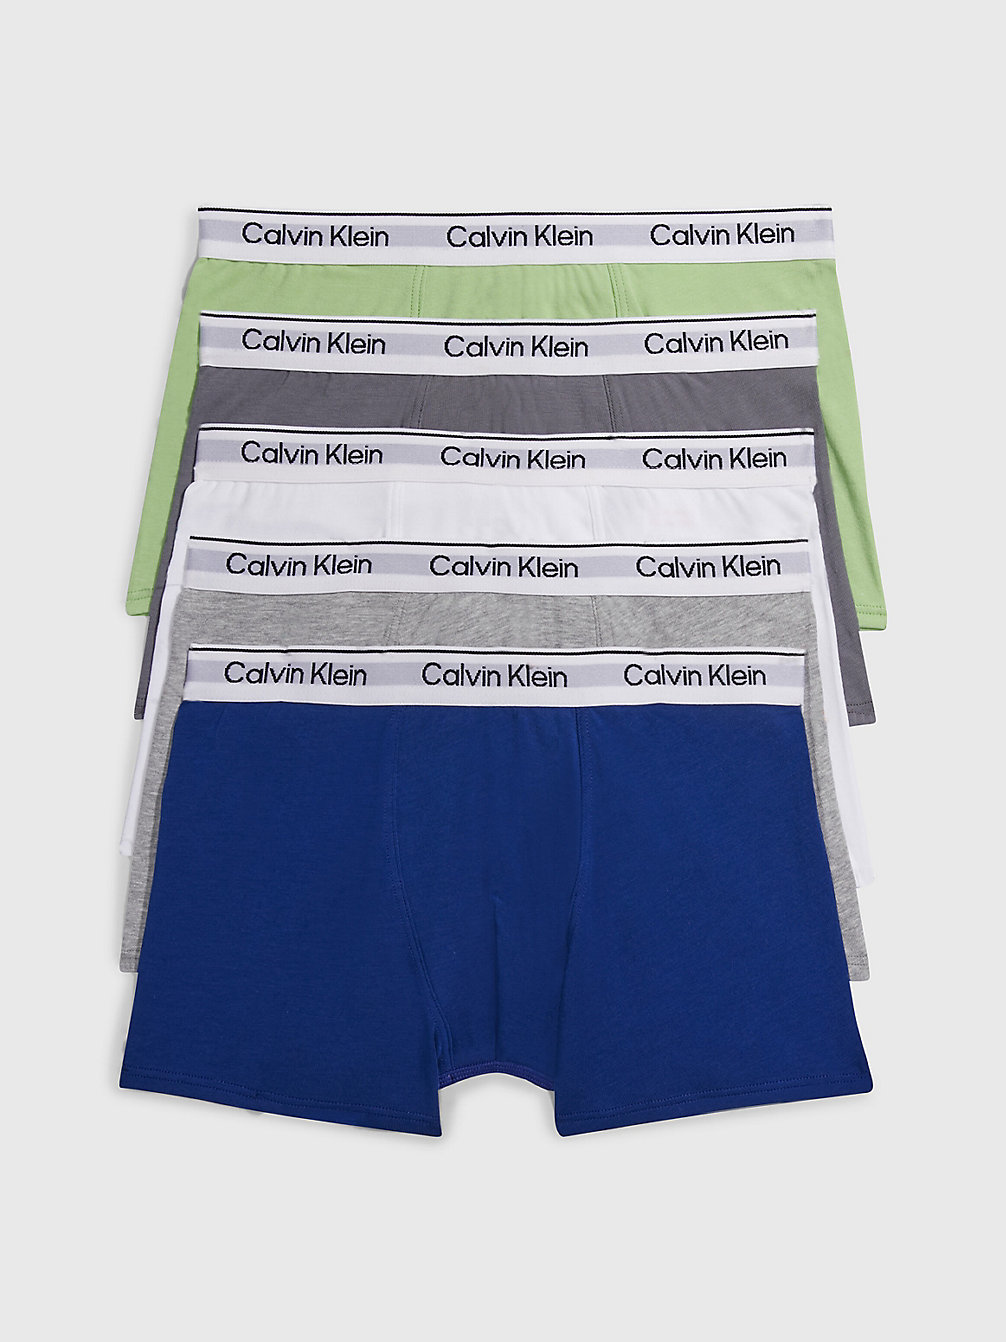 BBLUE/SPRINGF/ASFALTG/PWHITE/GHETHR 5er-Pack Boxershorts Für Jungen - Modern Cotton undefined Jungen Calvin Klein